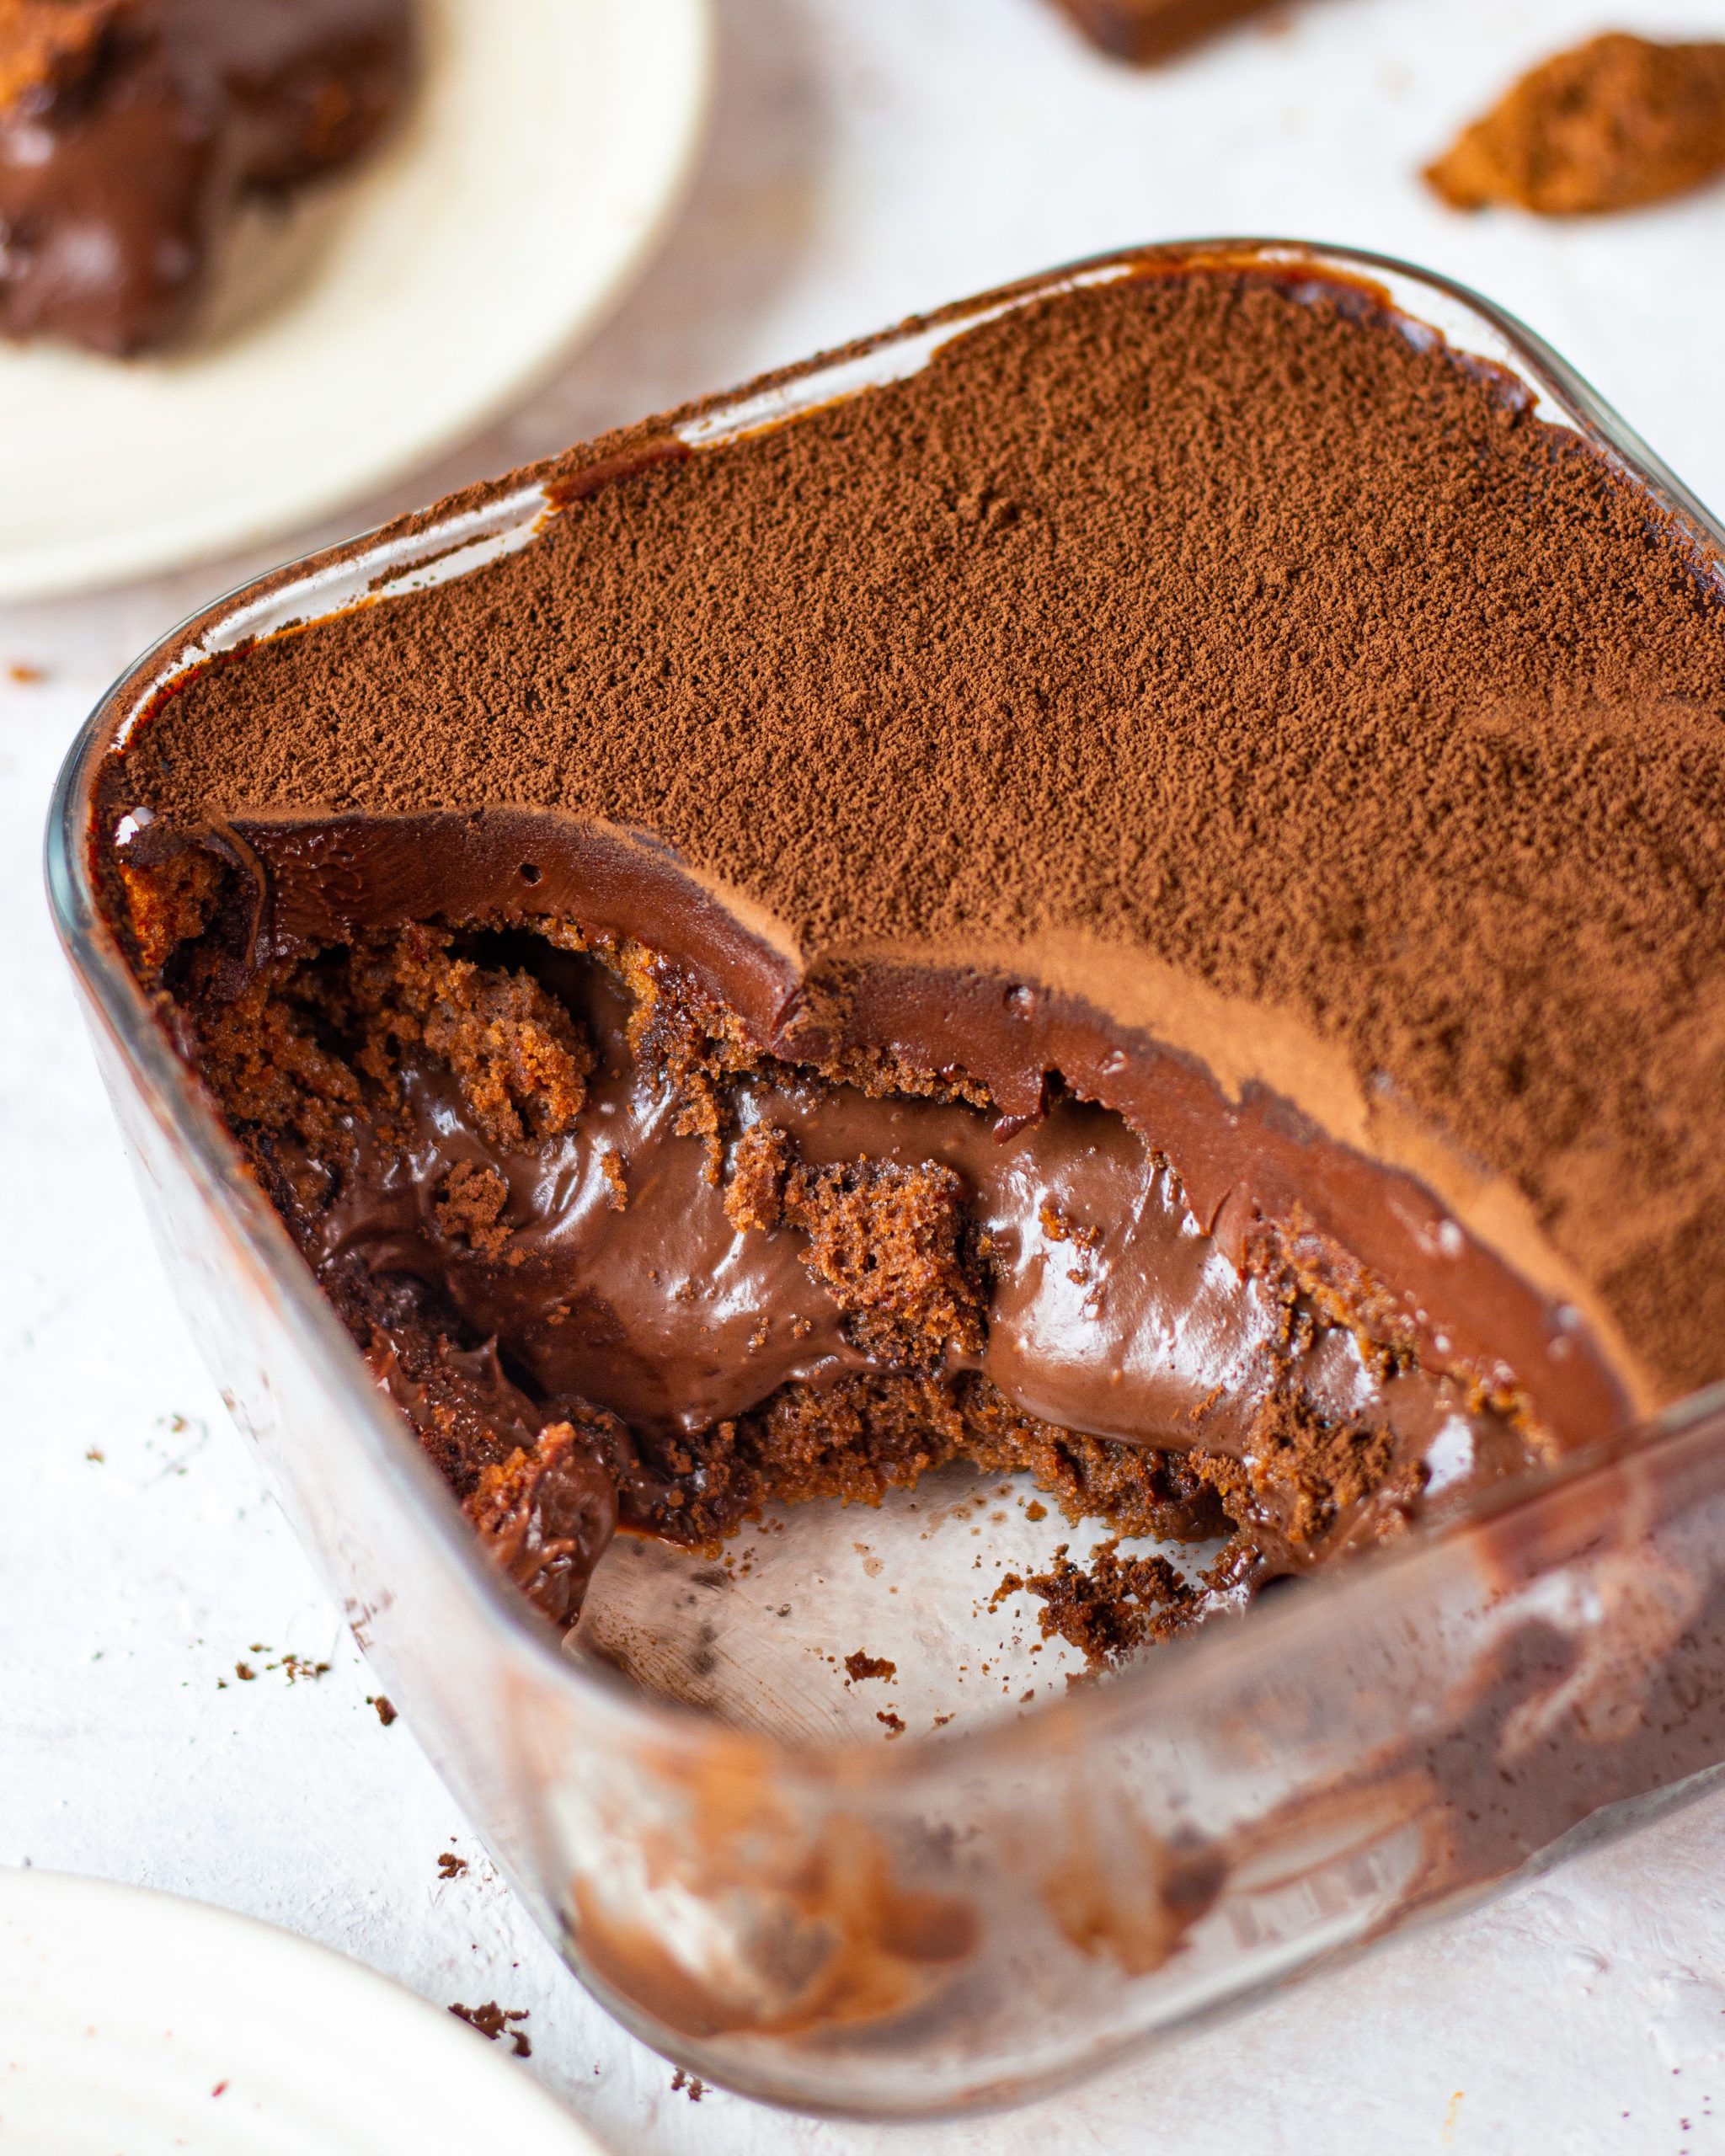 Best Chocolate Dream Cake Recipe - How to Make Chocolate Ganache Cake